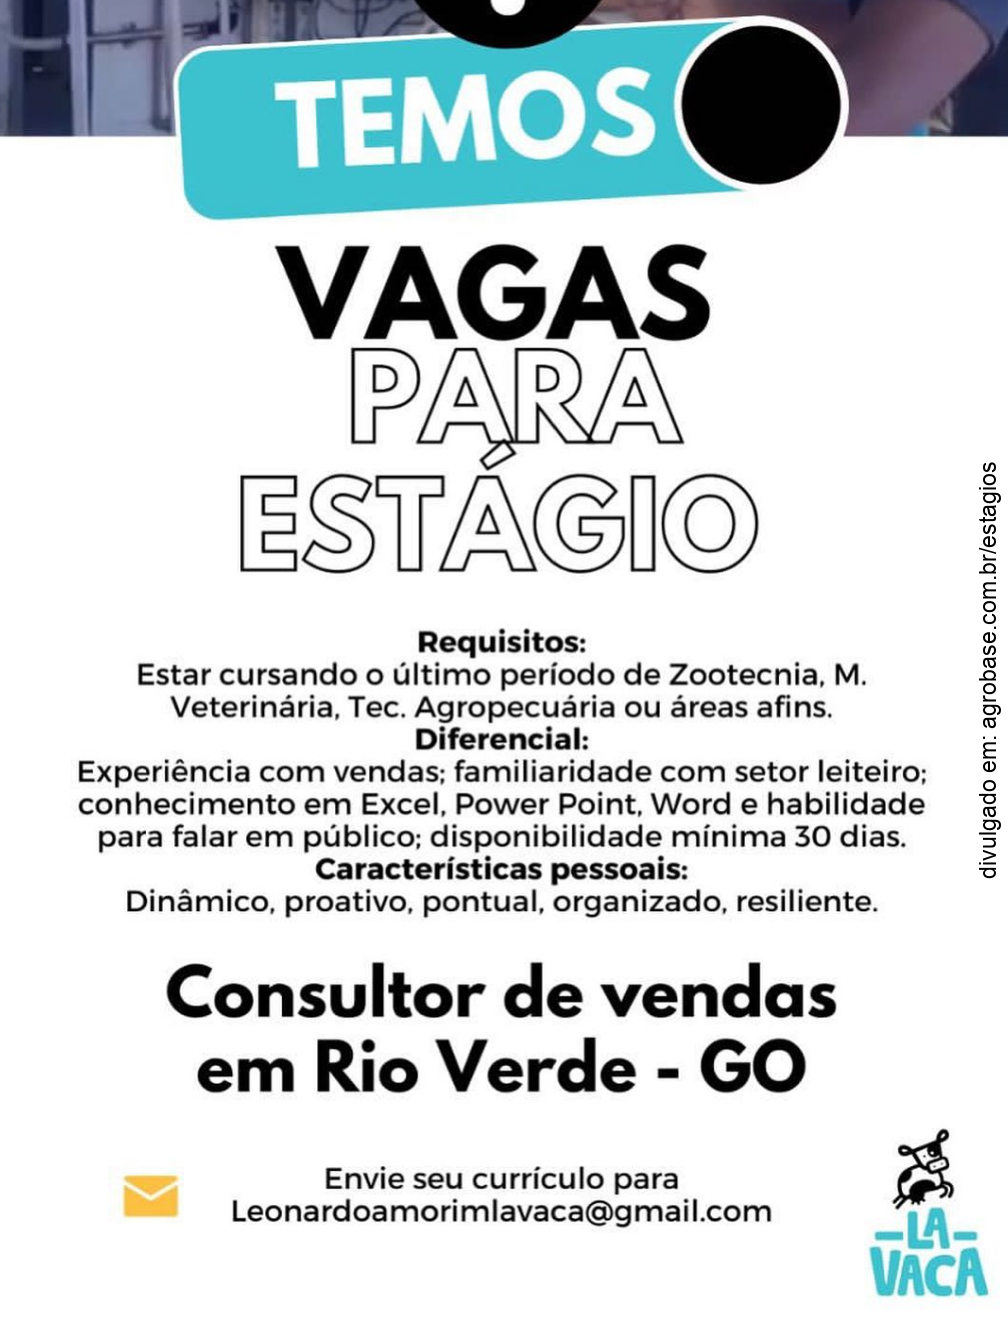 Consultor de vendas (estágio) – Rio Verde/GO